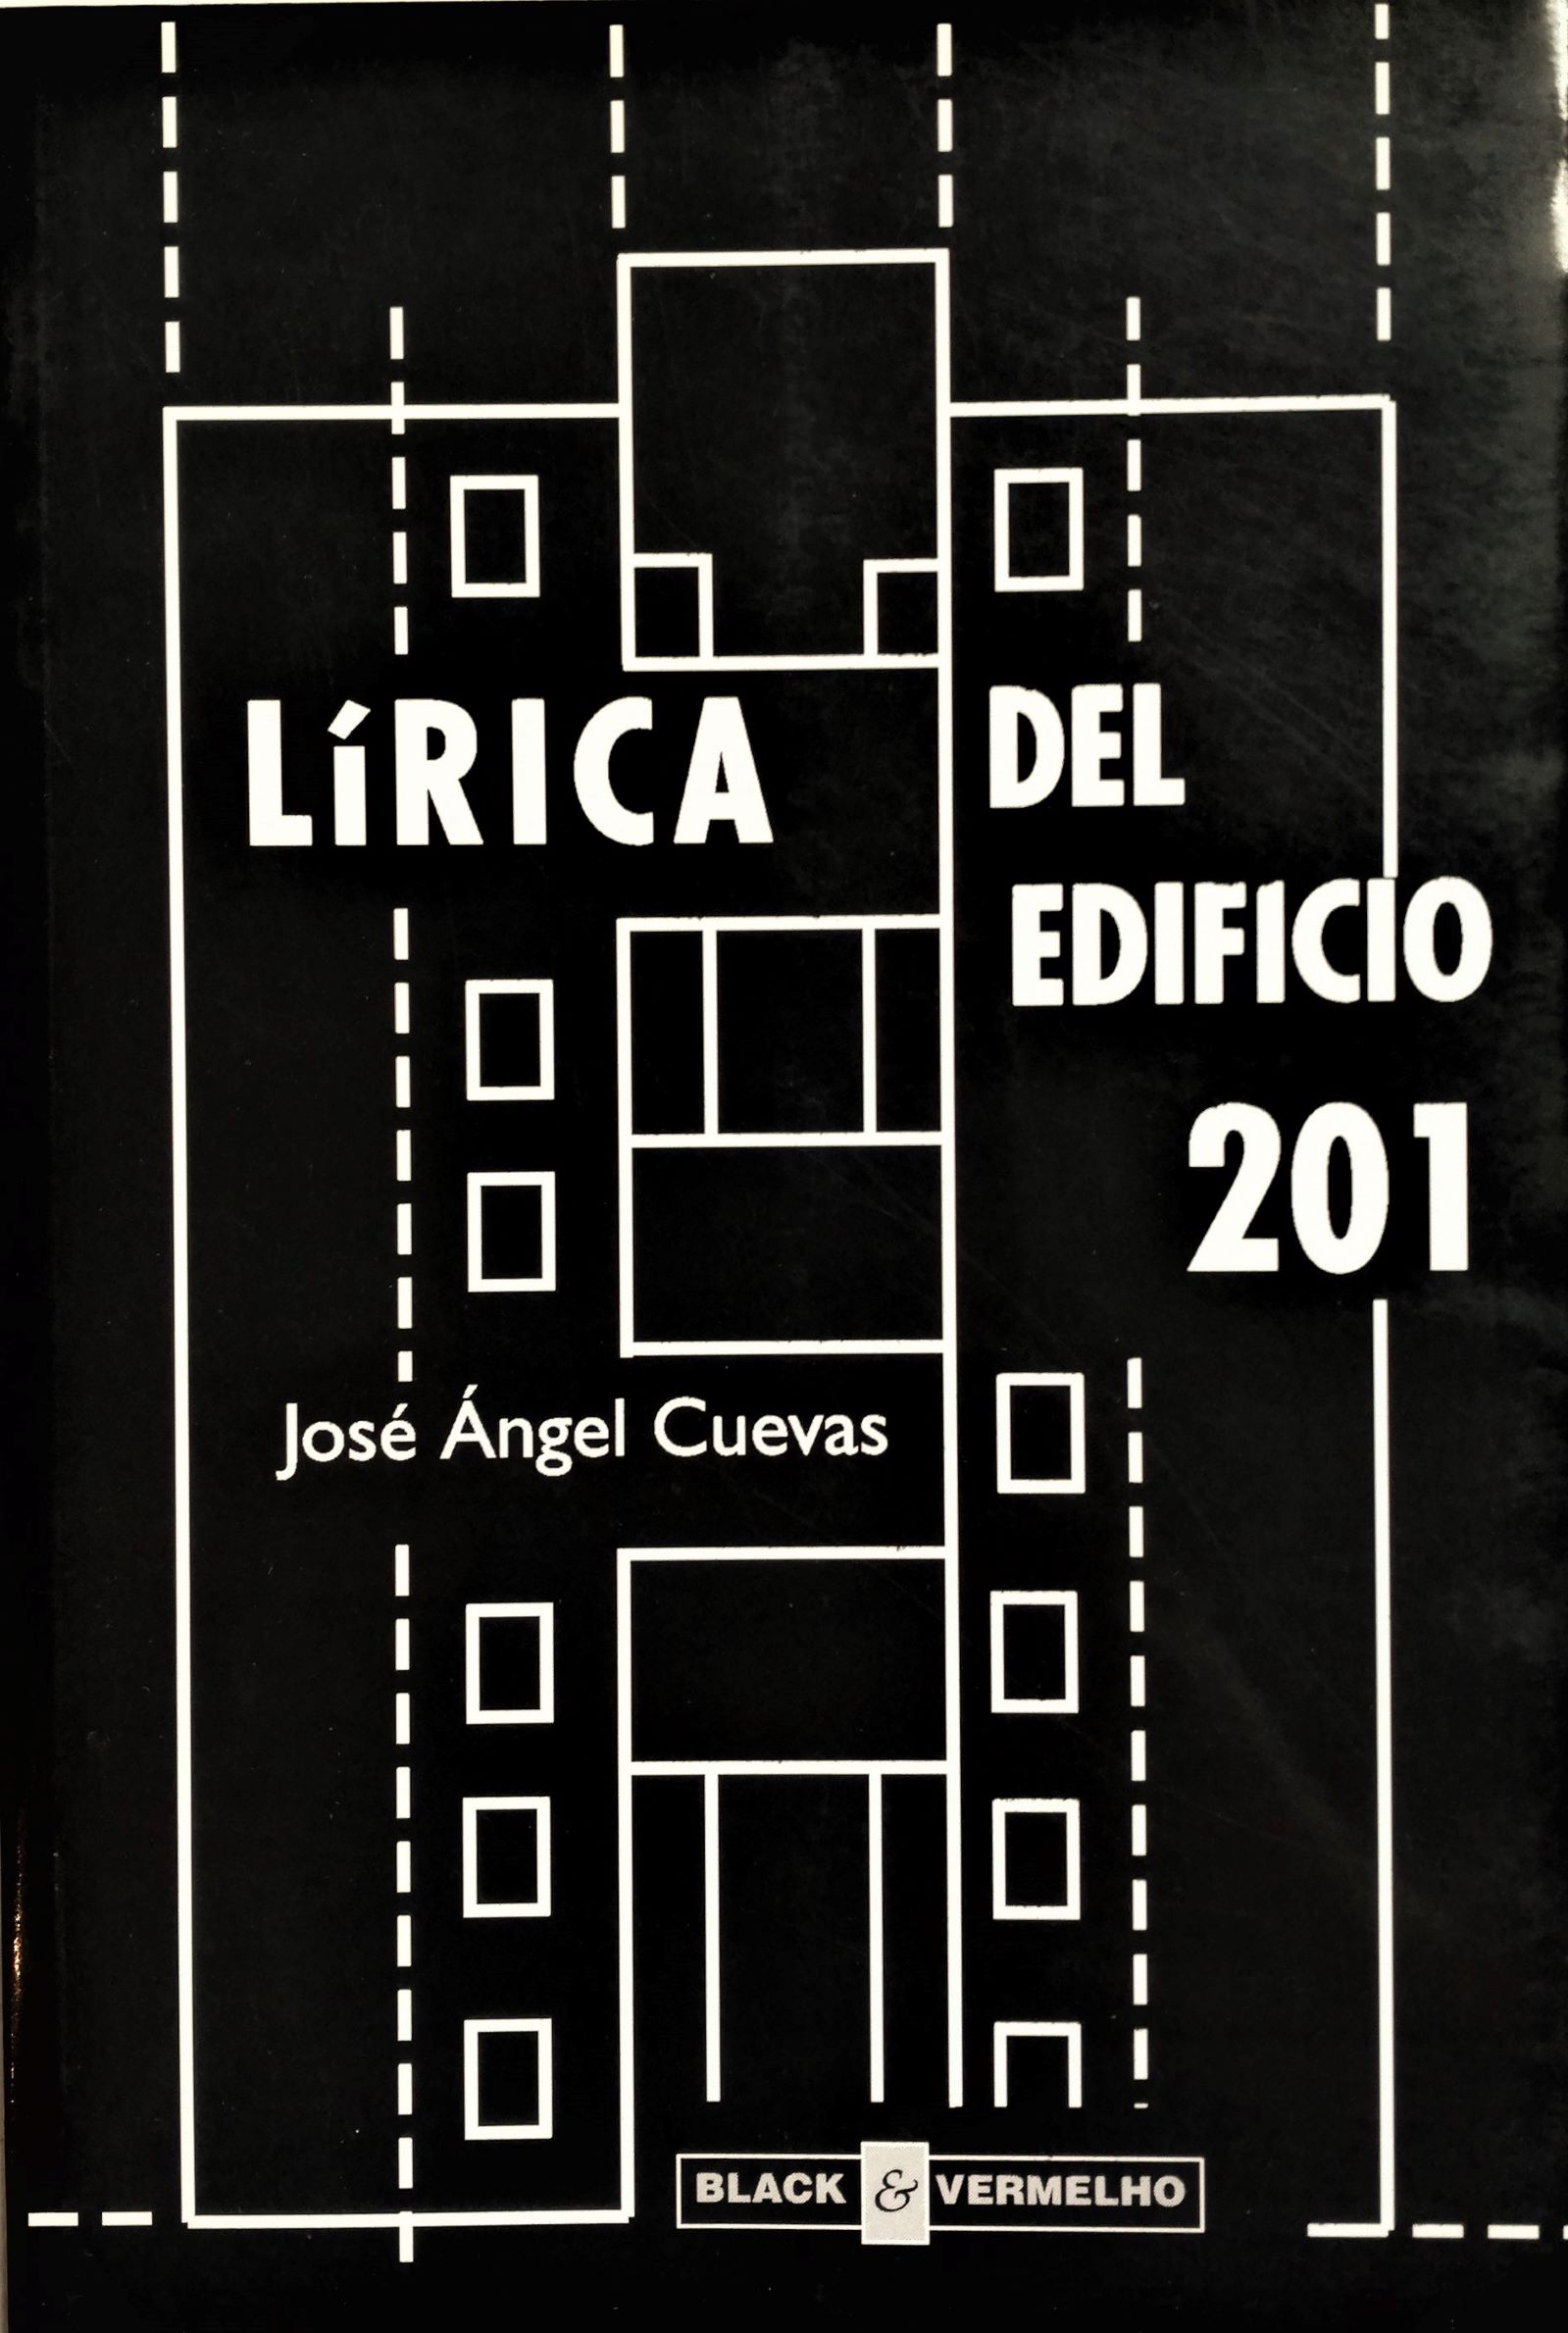 José Ángel Cuevas - Lírica del edificio 201